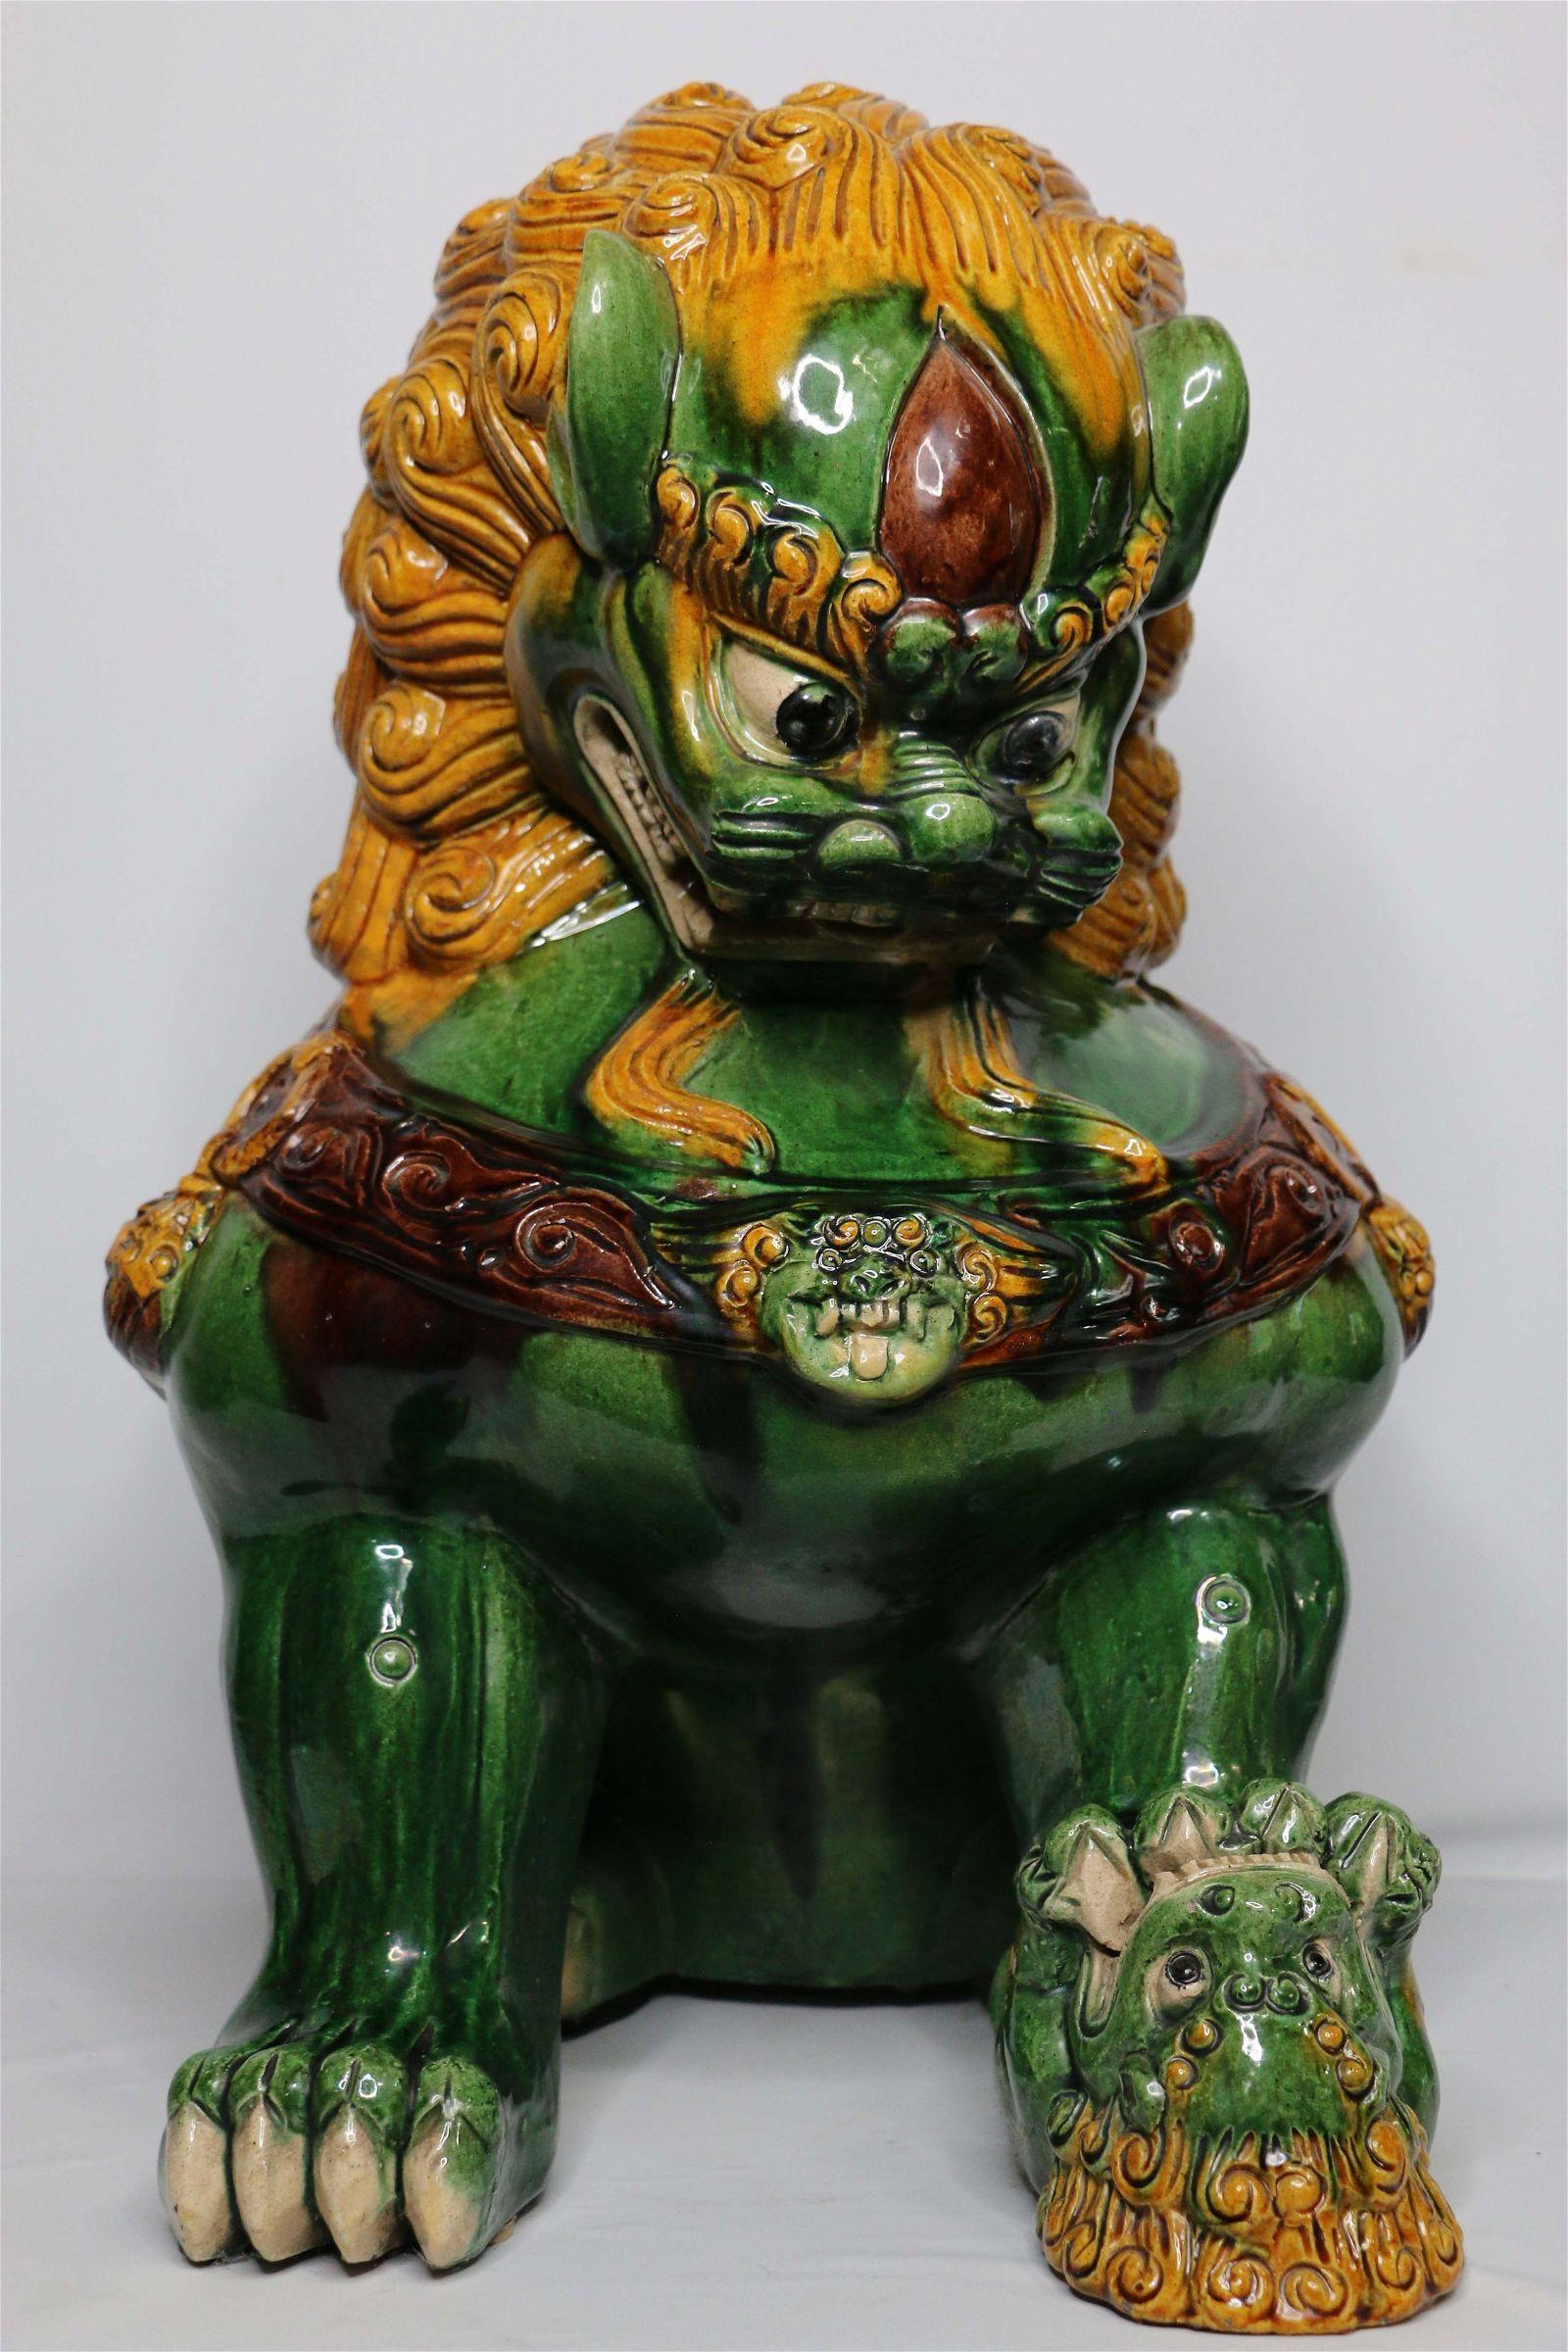 Großer chinesischer Foo-Löwe. Überwiegend grüne Glasur mit goldgelben Details, die der Glasurfärbung der Tang-Dynastie zugeschrieben werden. Dieser ungewöhnlich große Foo Dog hat ein grimmiges Gesicht. Er hält den traditionellen 